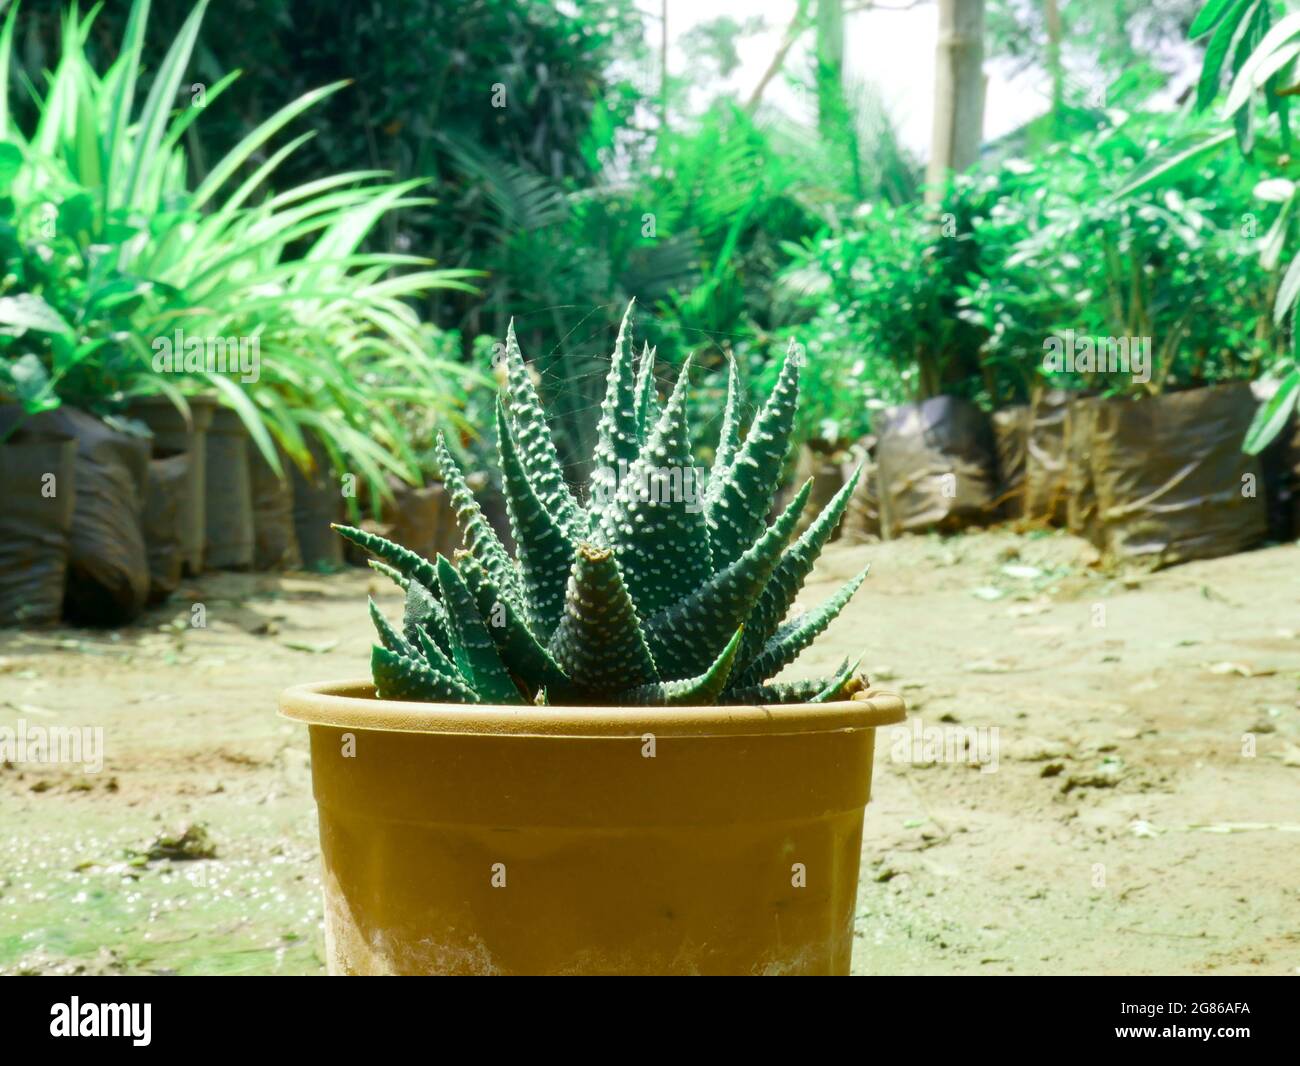 Cactus unique sur pot de sol présenté au jardin asiatique, image de beauté de la nature pour une utilisation commerciale. Banque D'Images